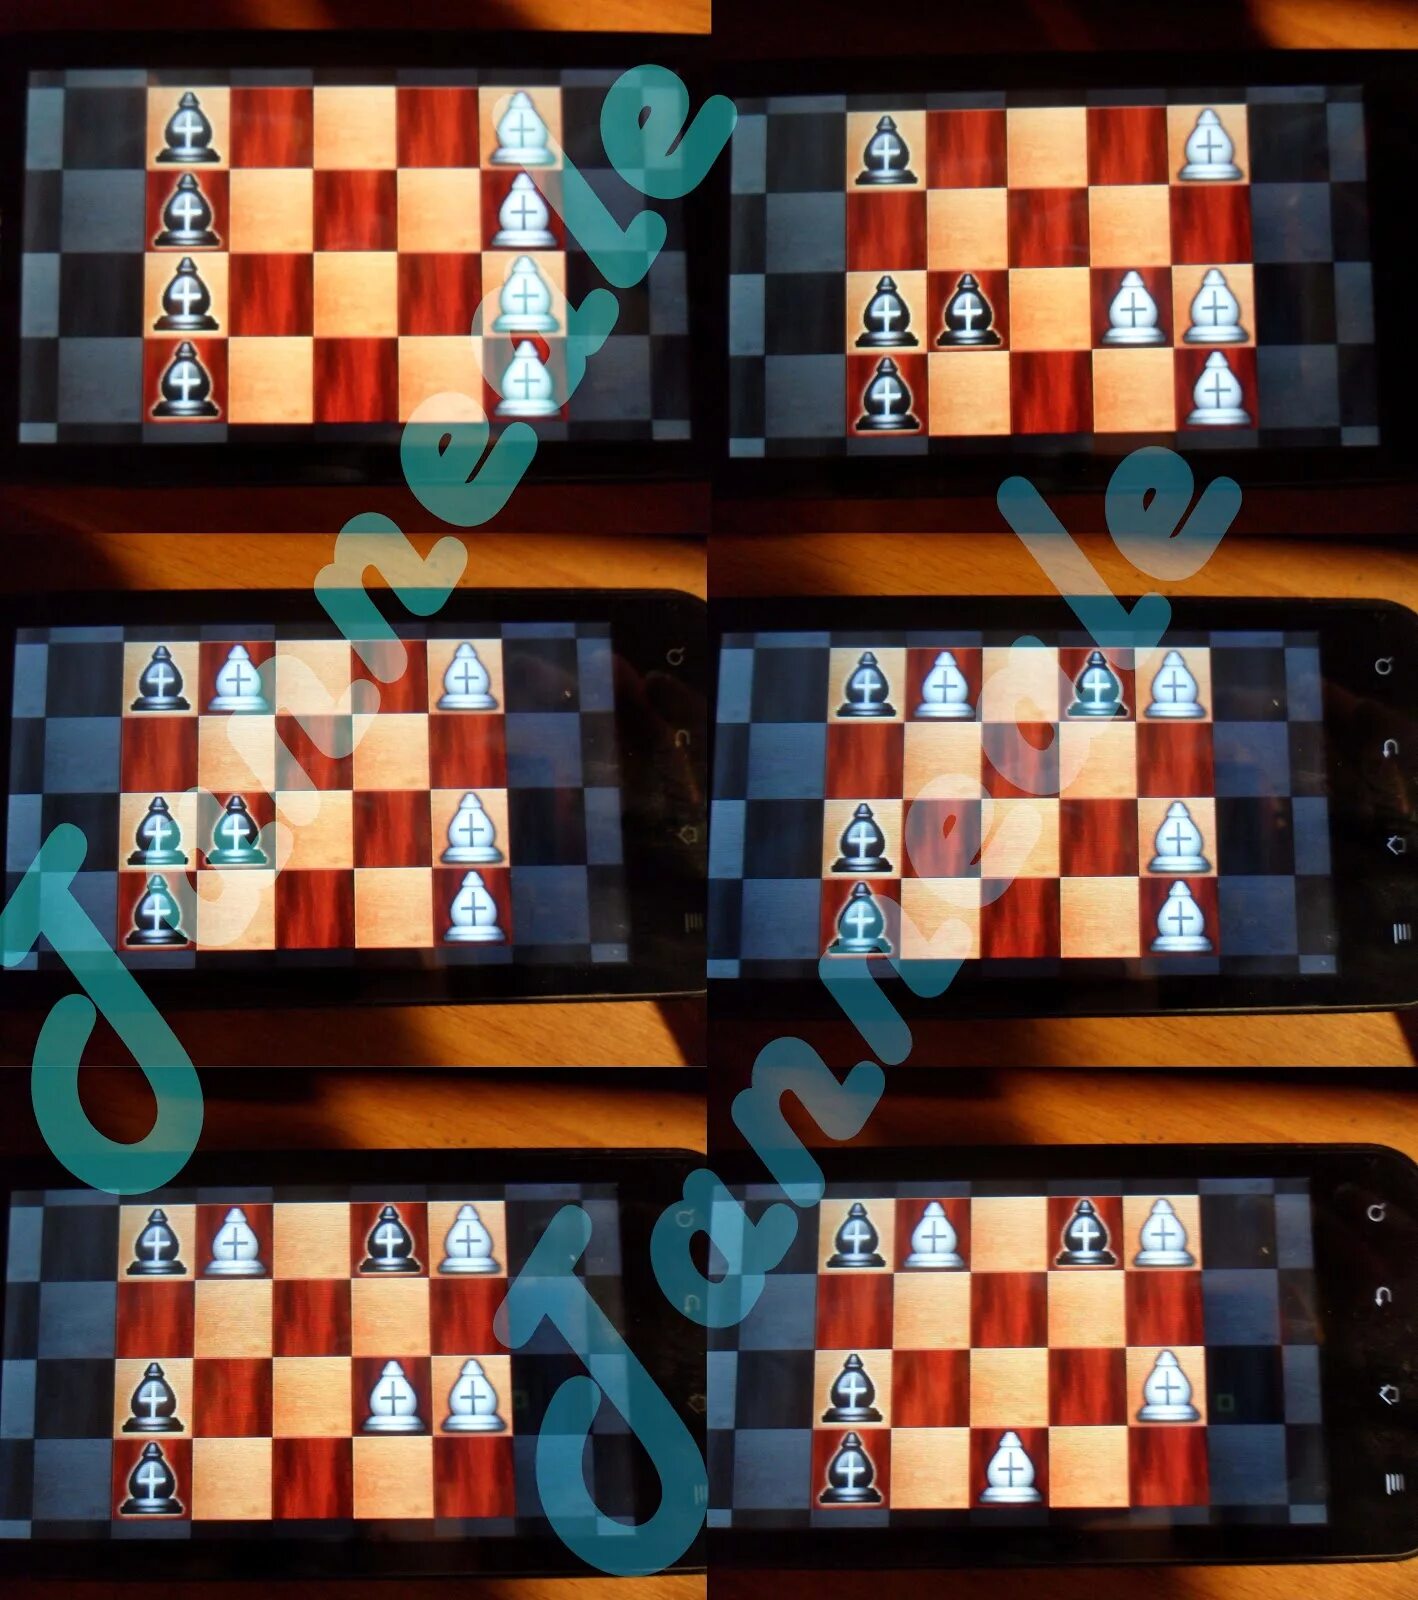 Игры разумов прохождение. Игры разума шахматы 2. Игры разума шахматы 1. Игры разума шахматы 7. Игры разума шахматы 5.